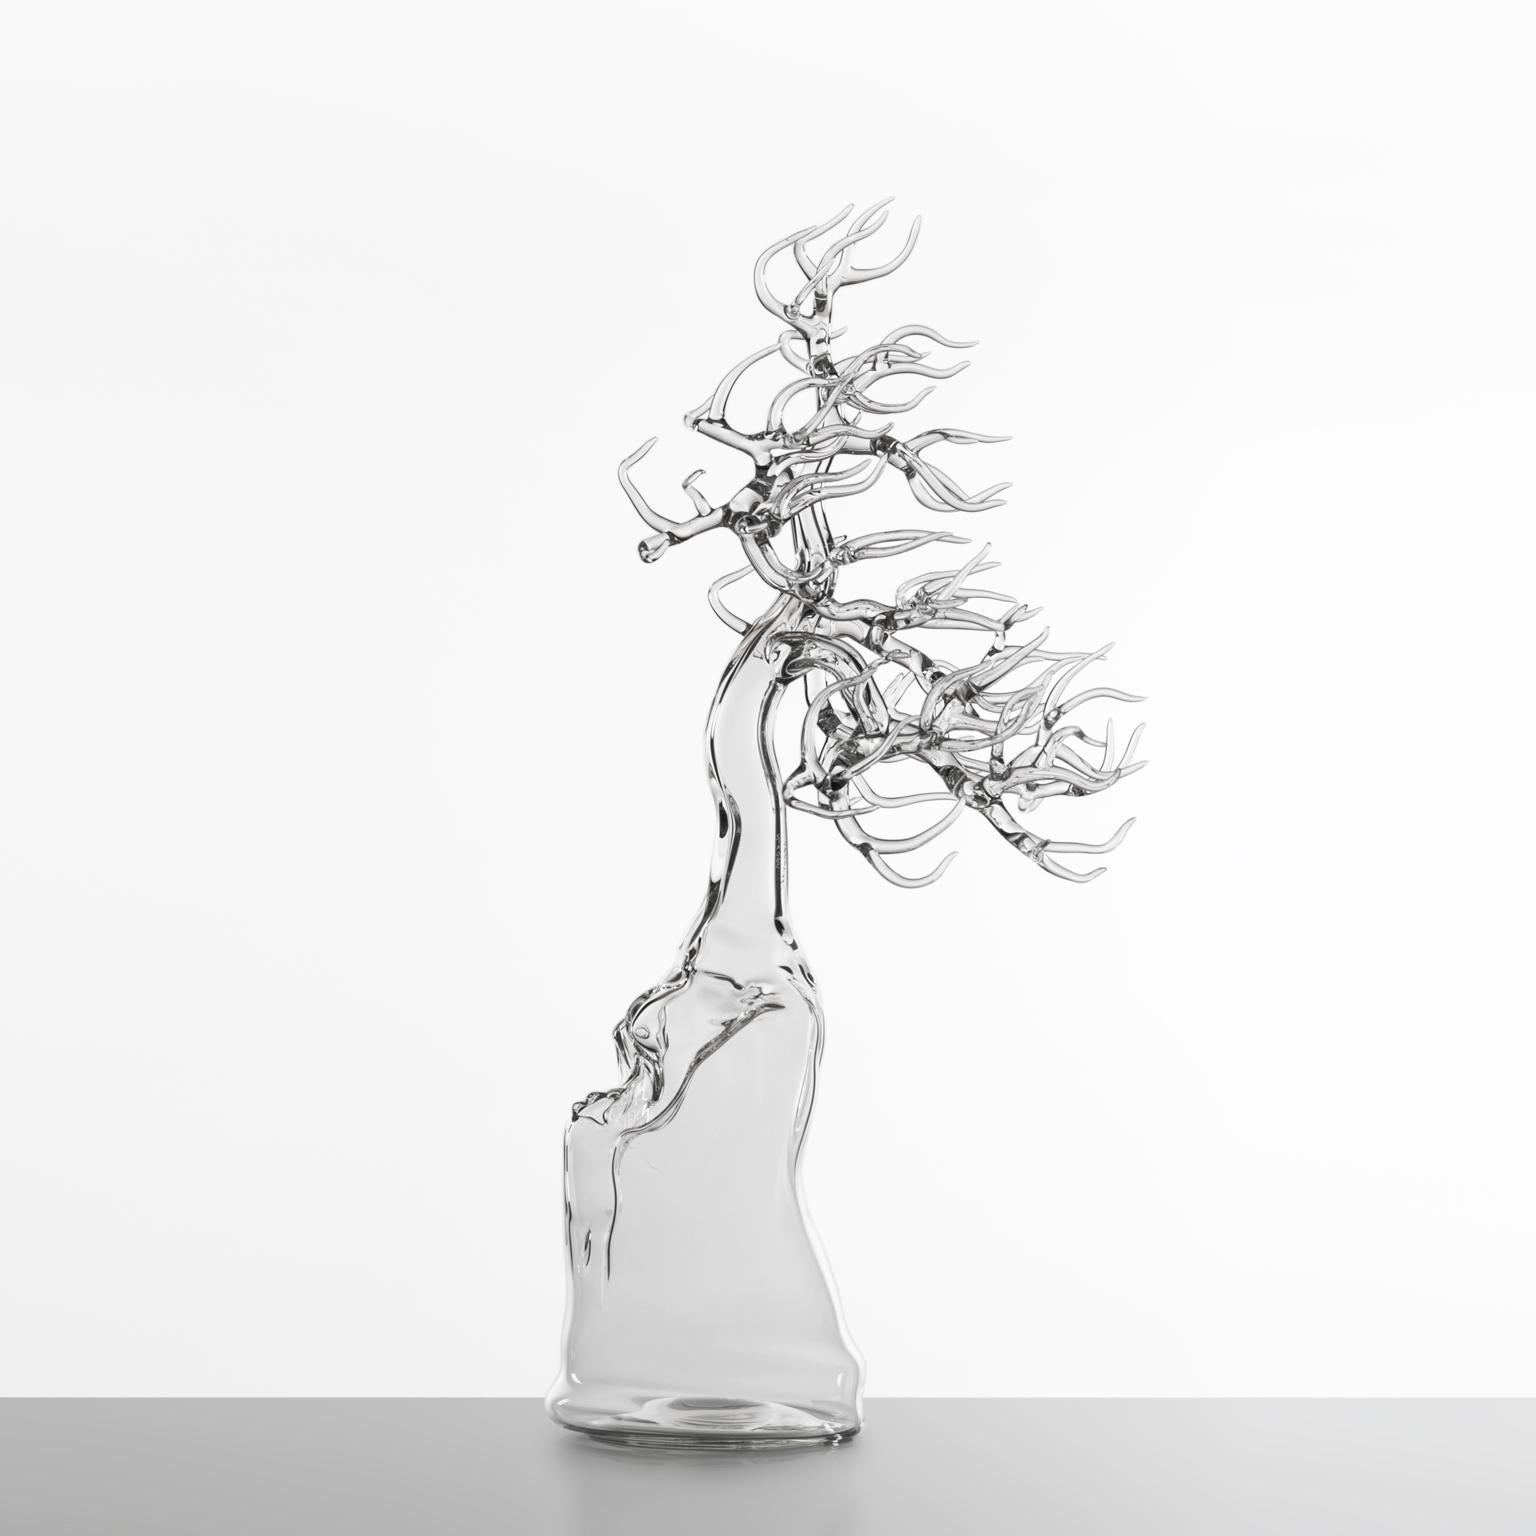 Skulptur aus mundgeblasenem Glas, die einen Bonsaibaum darstellt.

